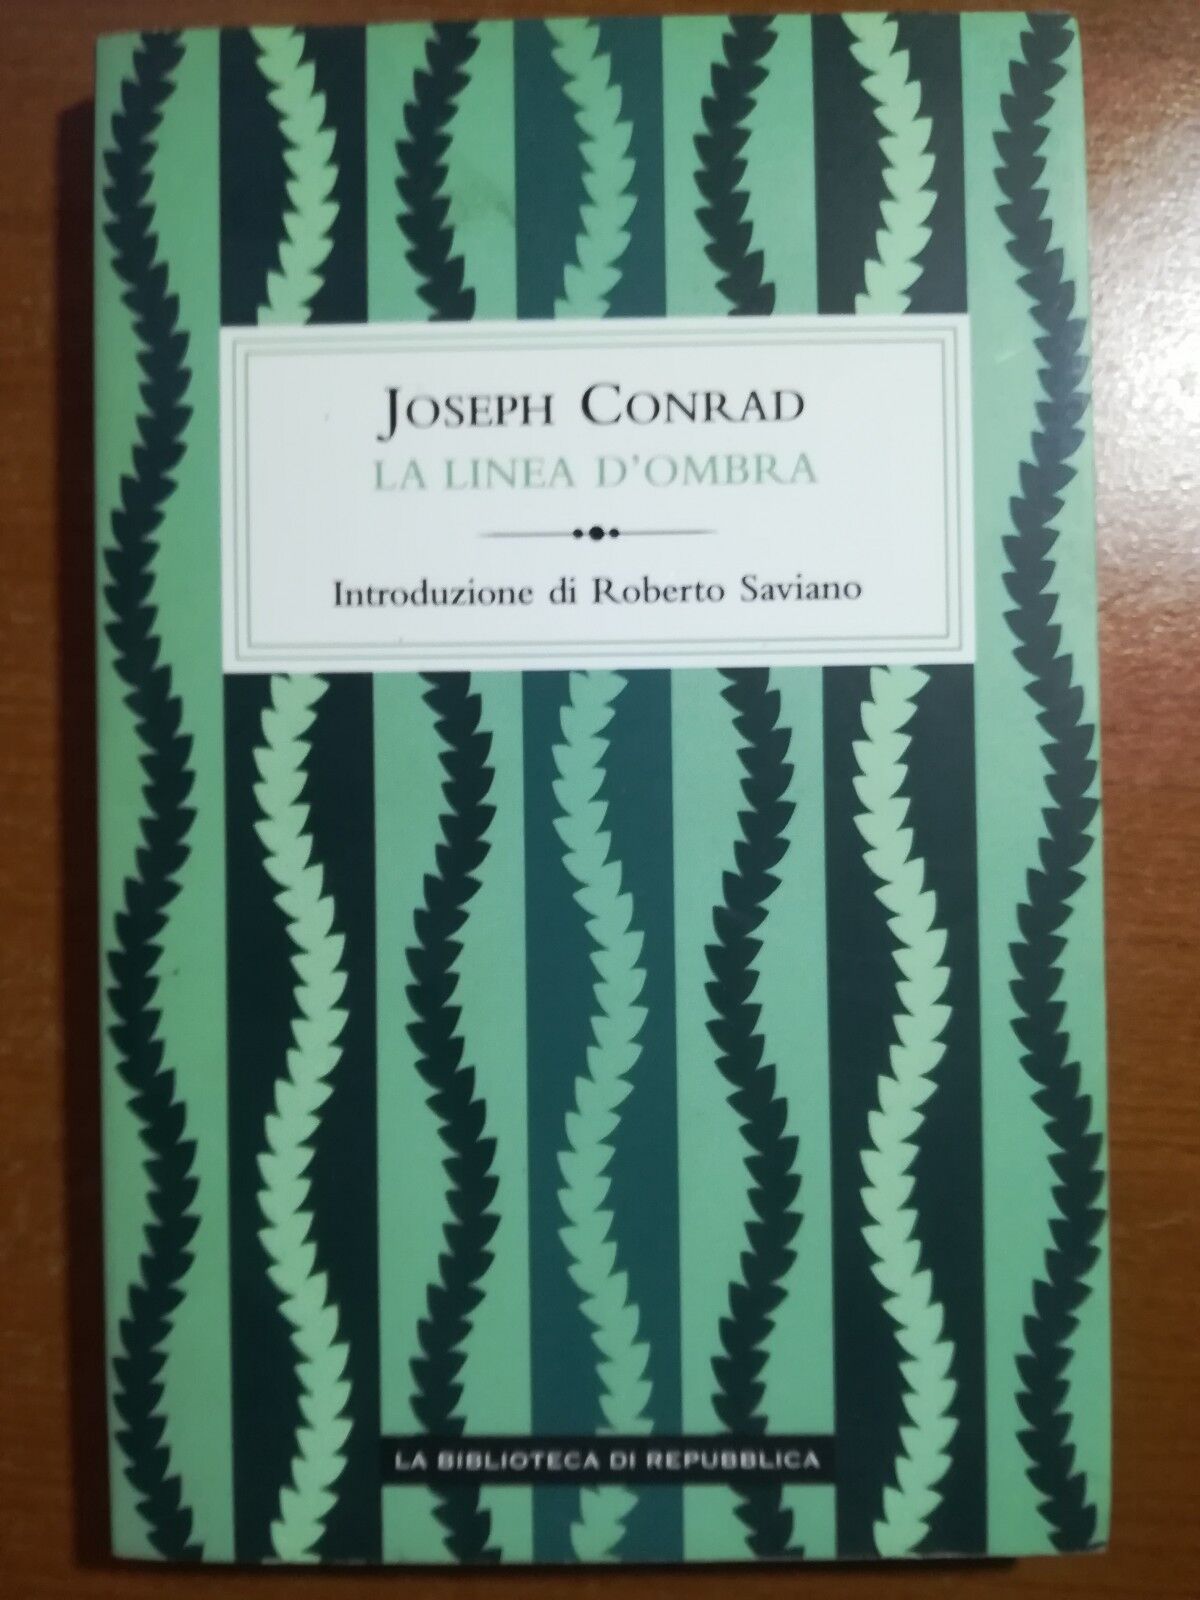 La linea d'ombra - Joseph Conrad - La biblioteca di repubblica -2011 - M